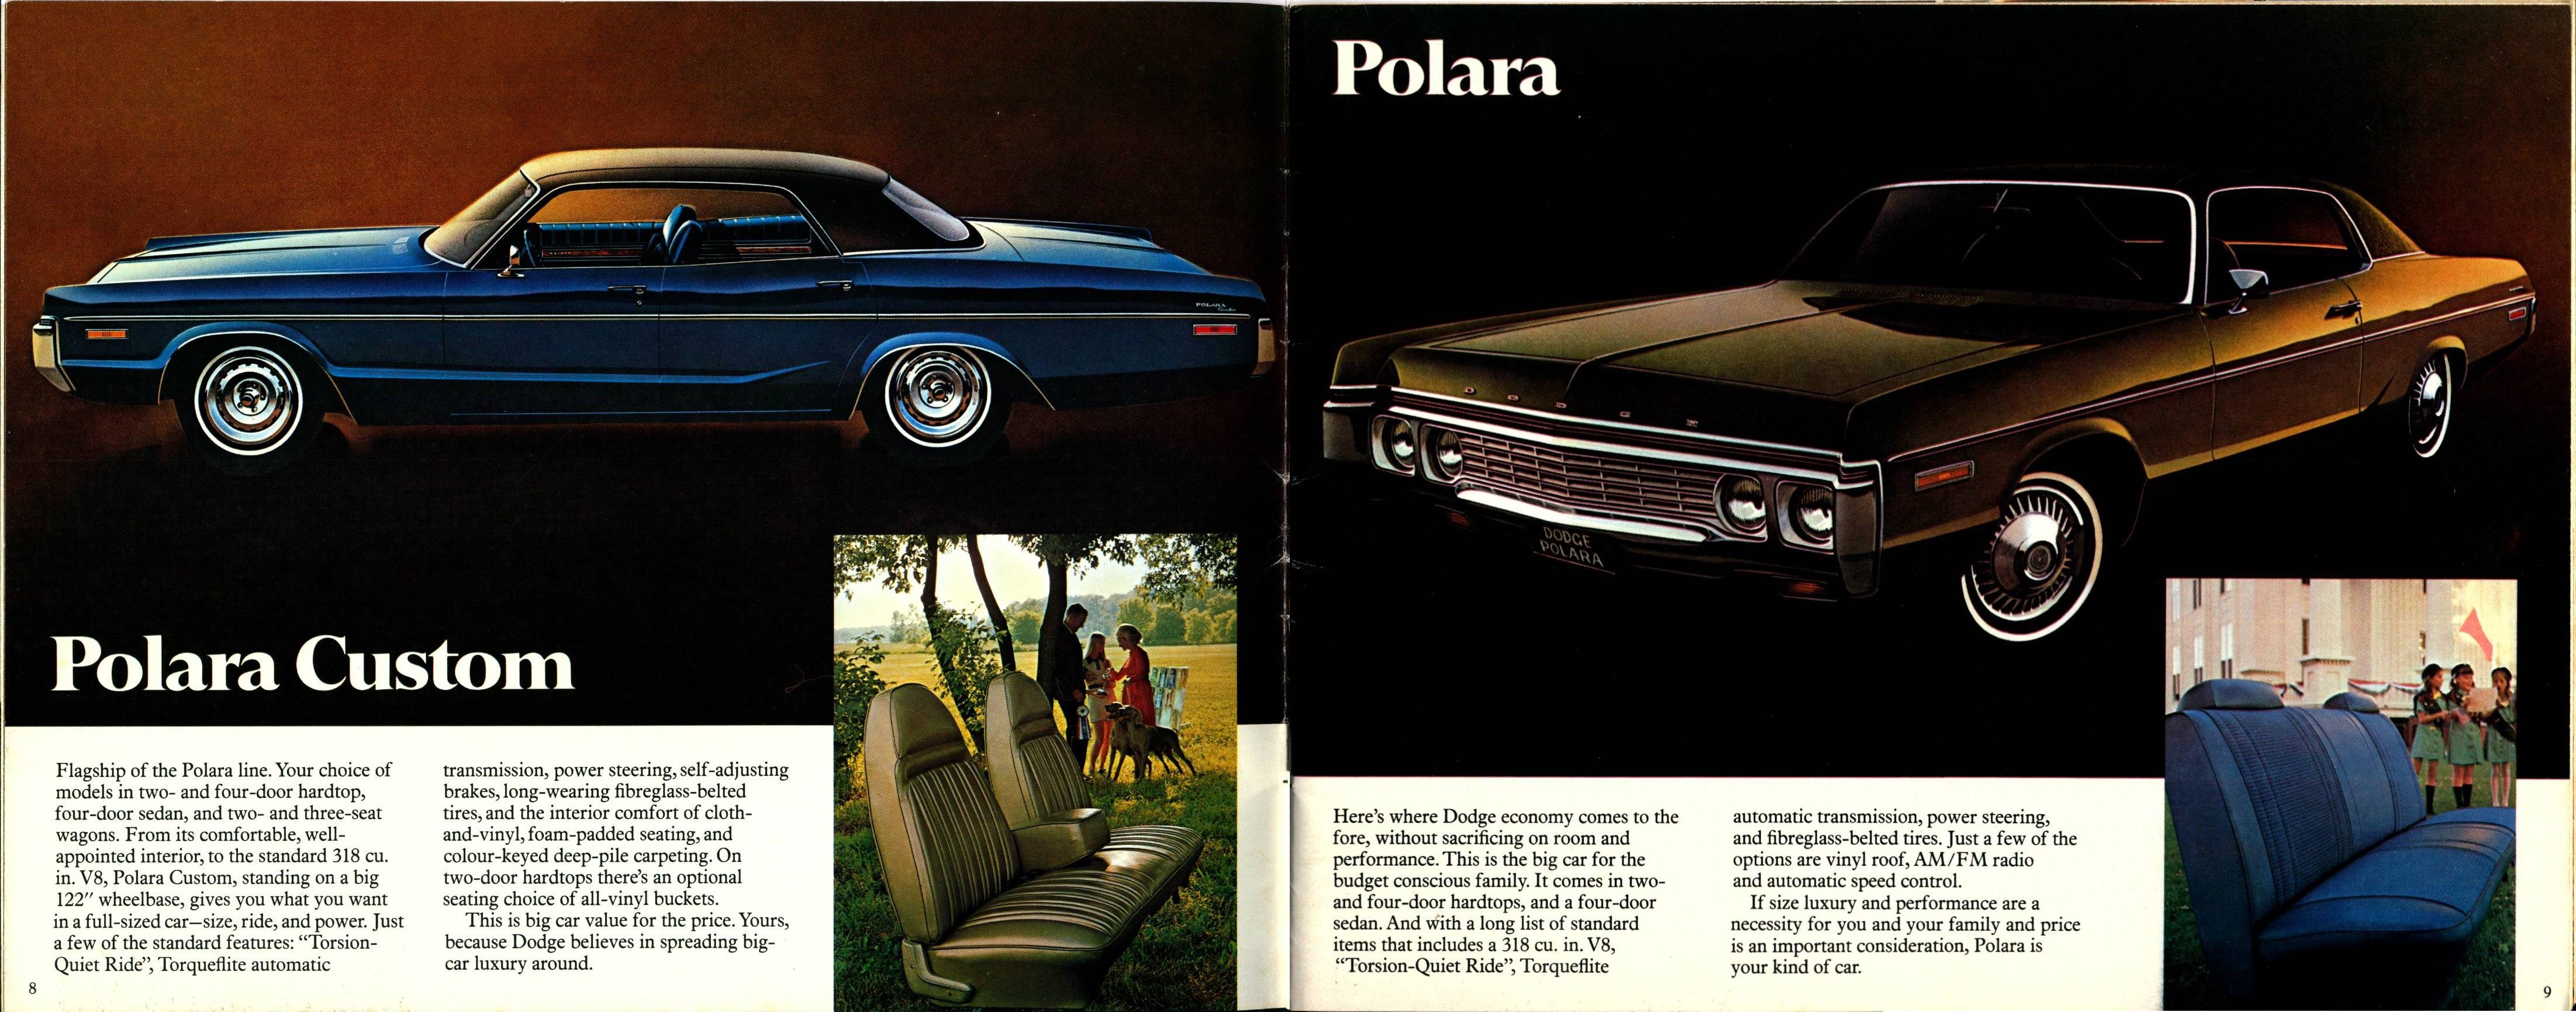 1972 Dodge Full Line Brochure (Cdn)  08-09